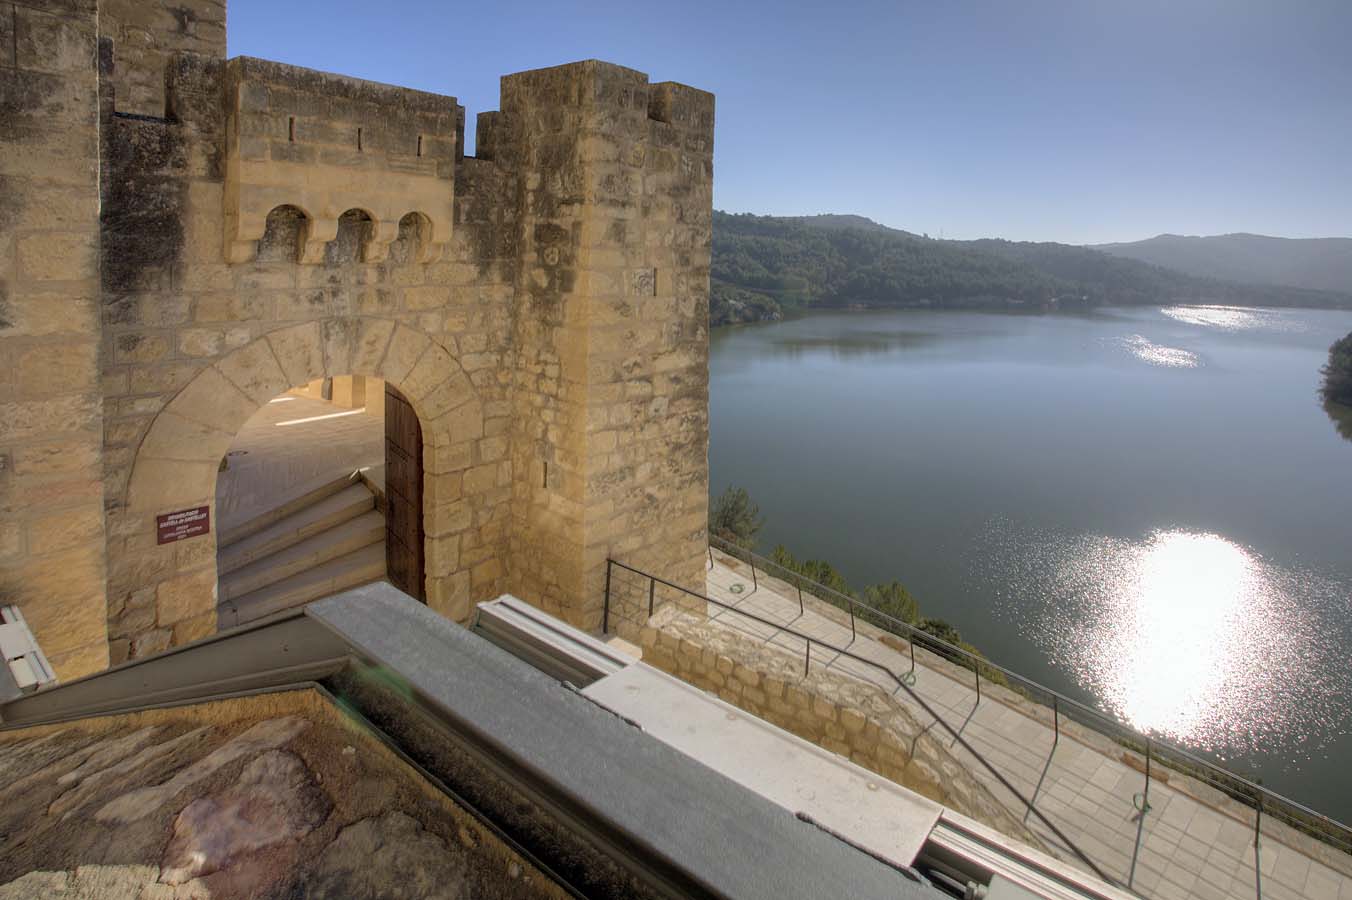 El castillo de Castellet es una fortaleza militar levantada a finales del siglo X y tuvo como misión defender la Marca hispánica de la invasión árabe